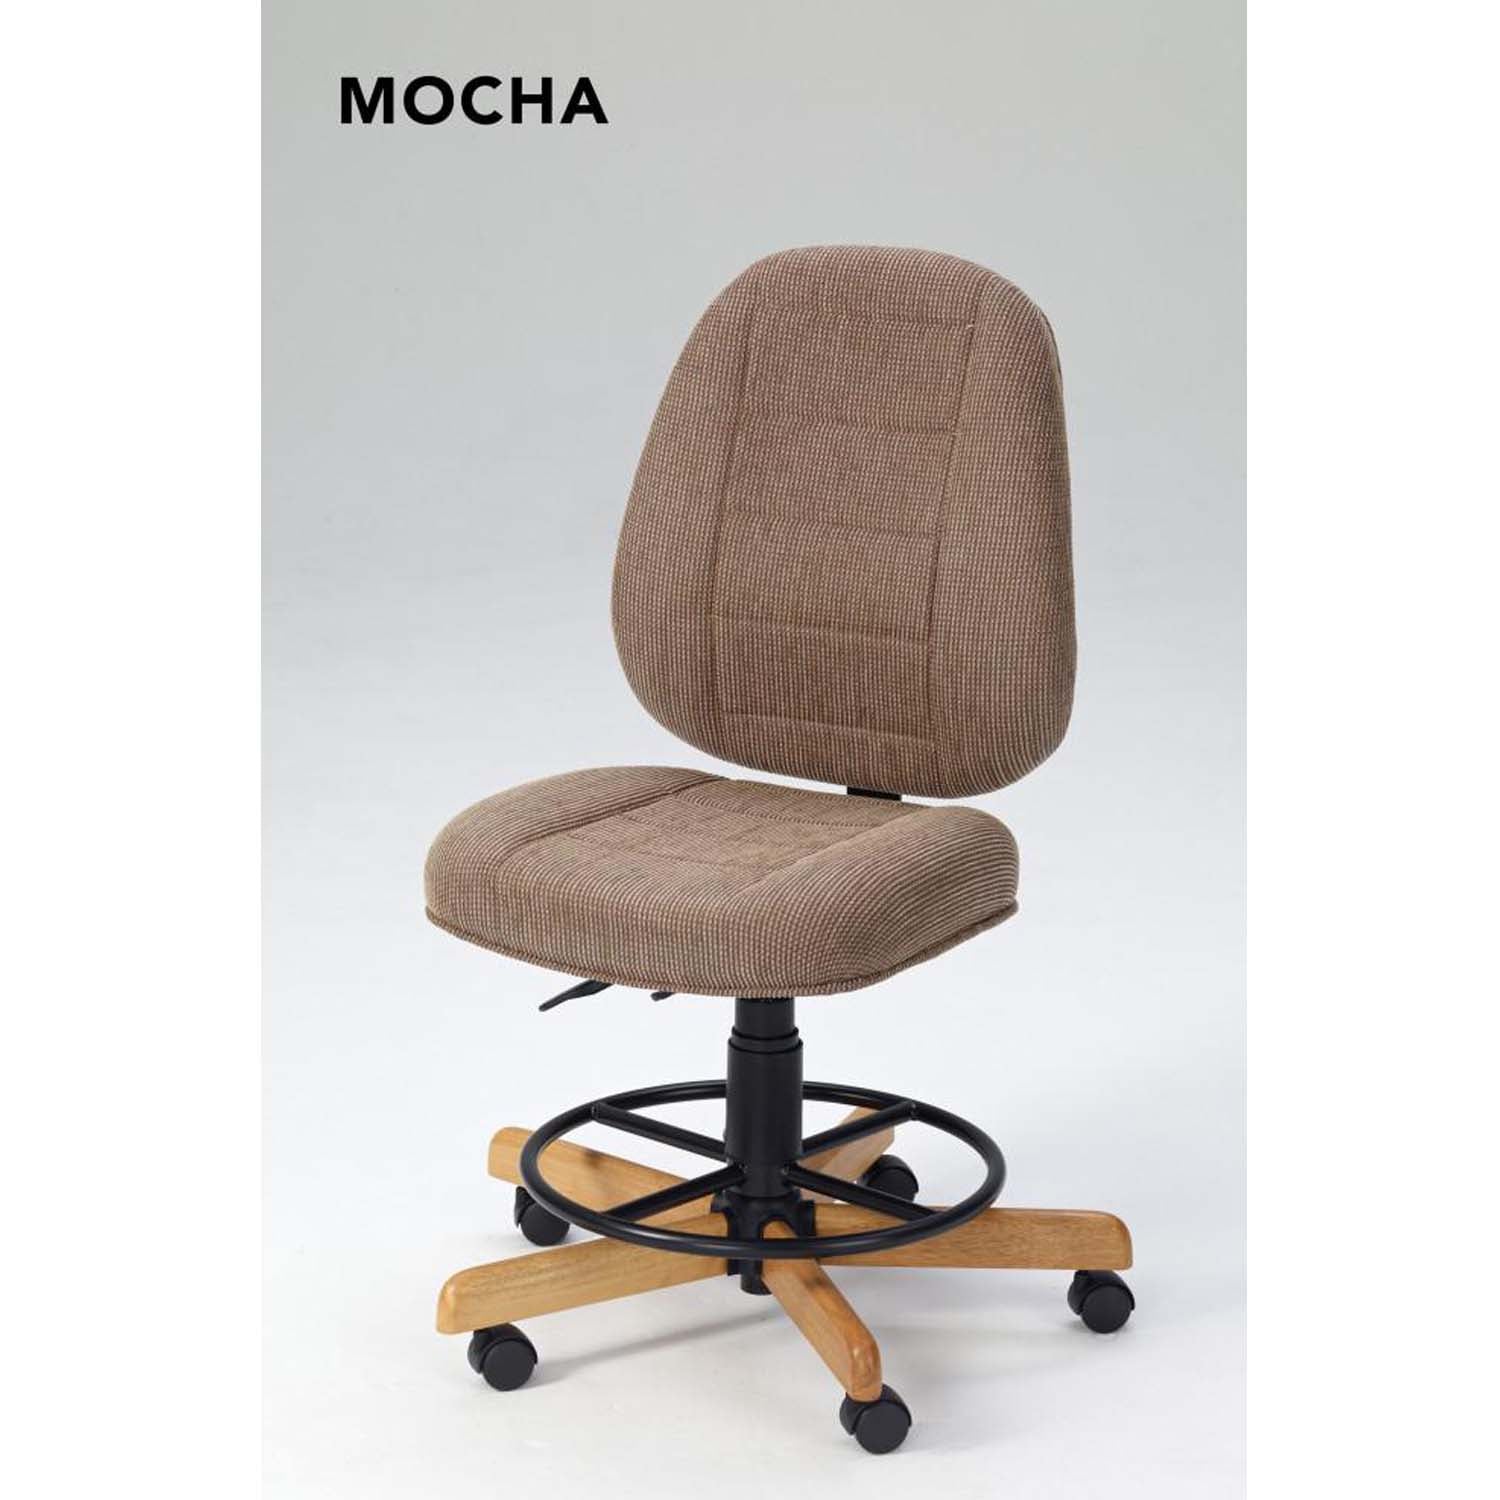 Single Kooala Chair with Footrest